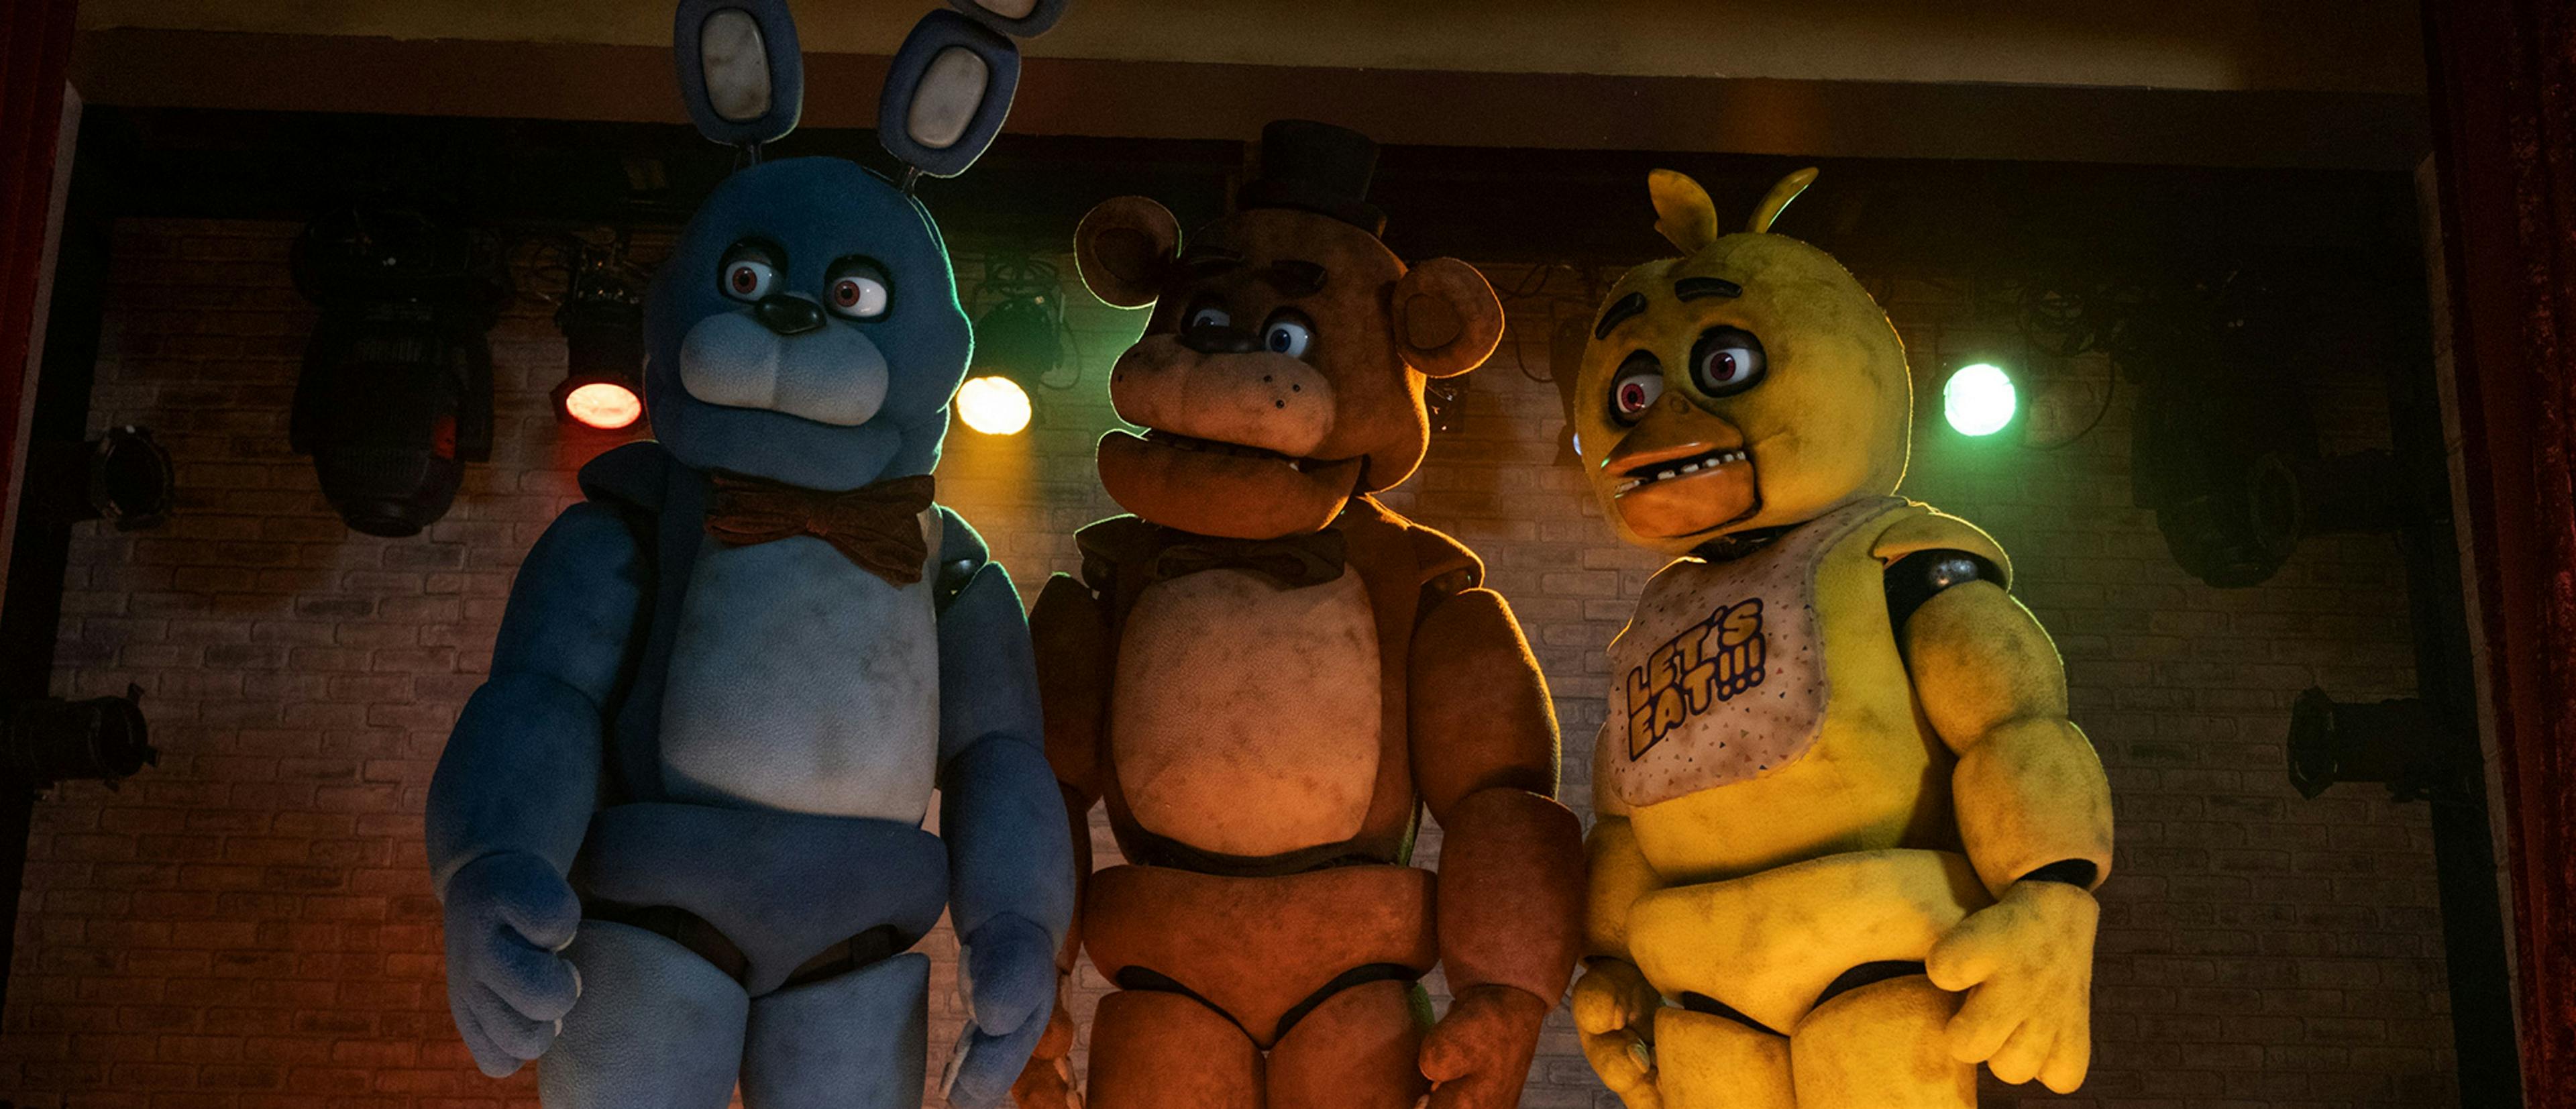 Imagen de la película de terror 'Five nights at Freddy's', donde los animatrónicos tienen malas intenciones